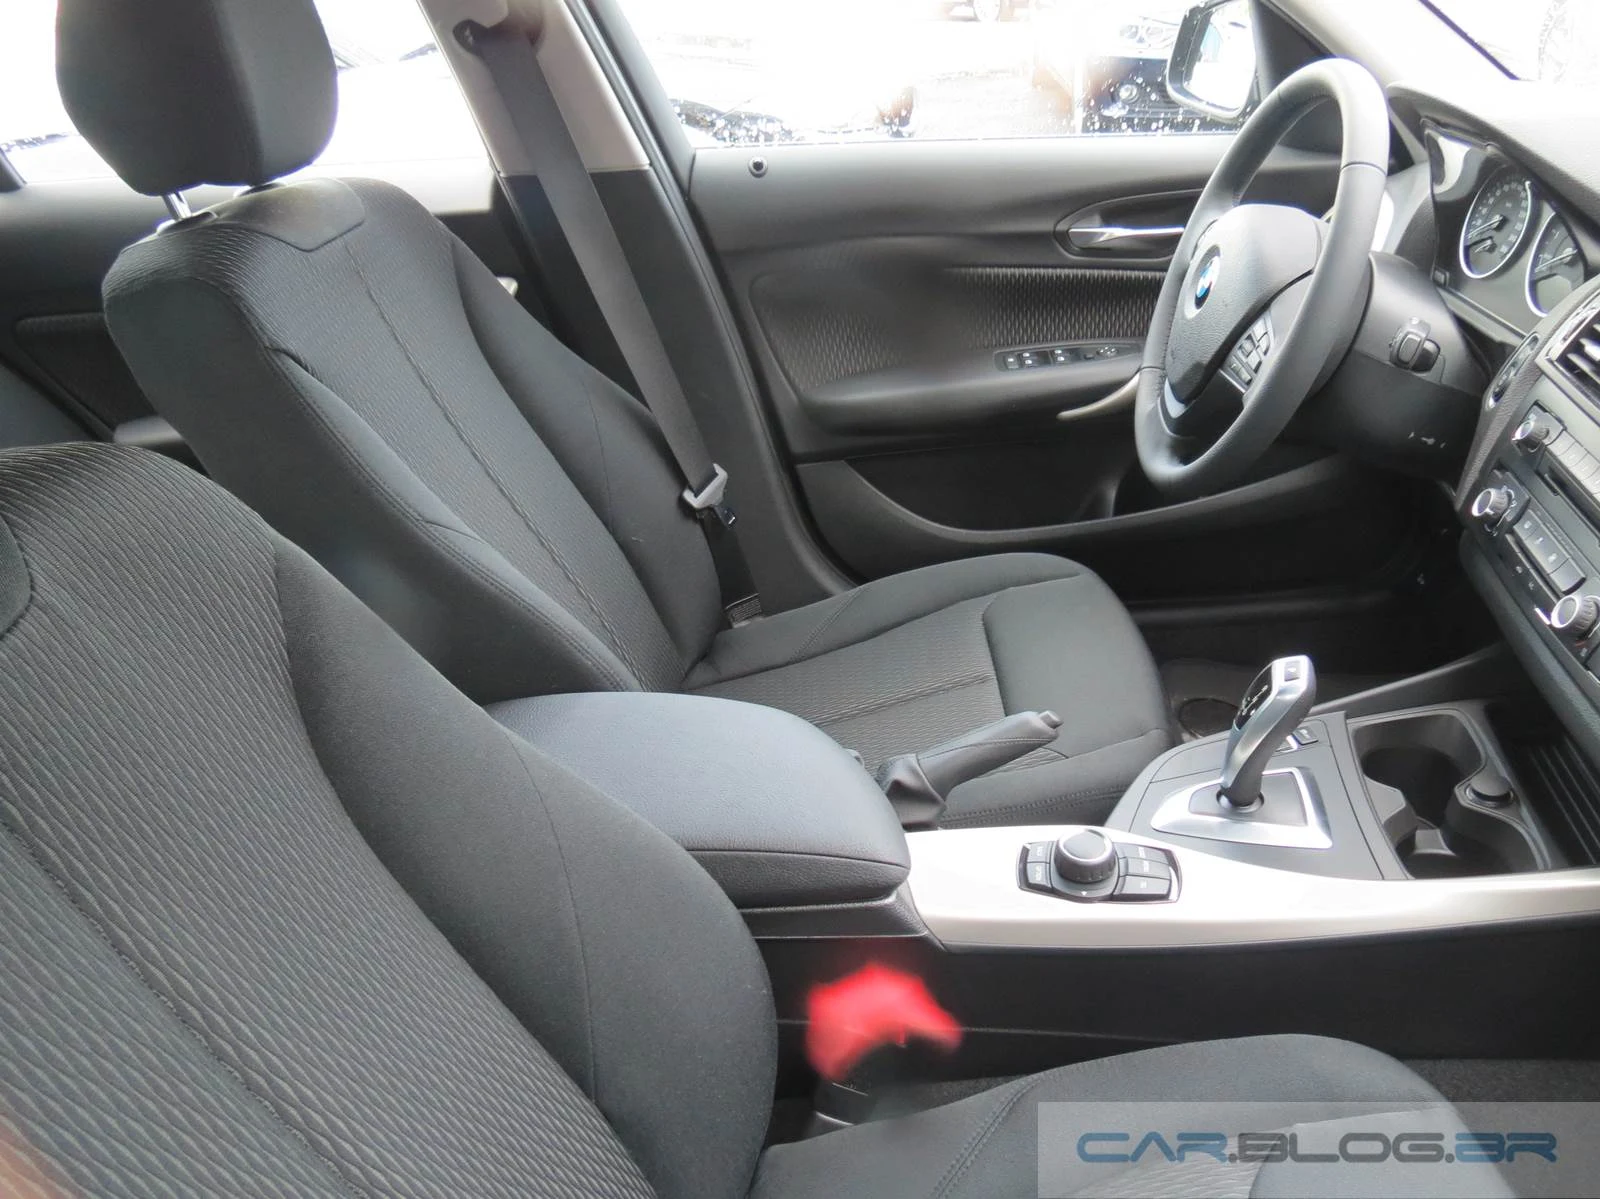 BMW 116i 2015 - interior